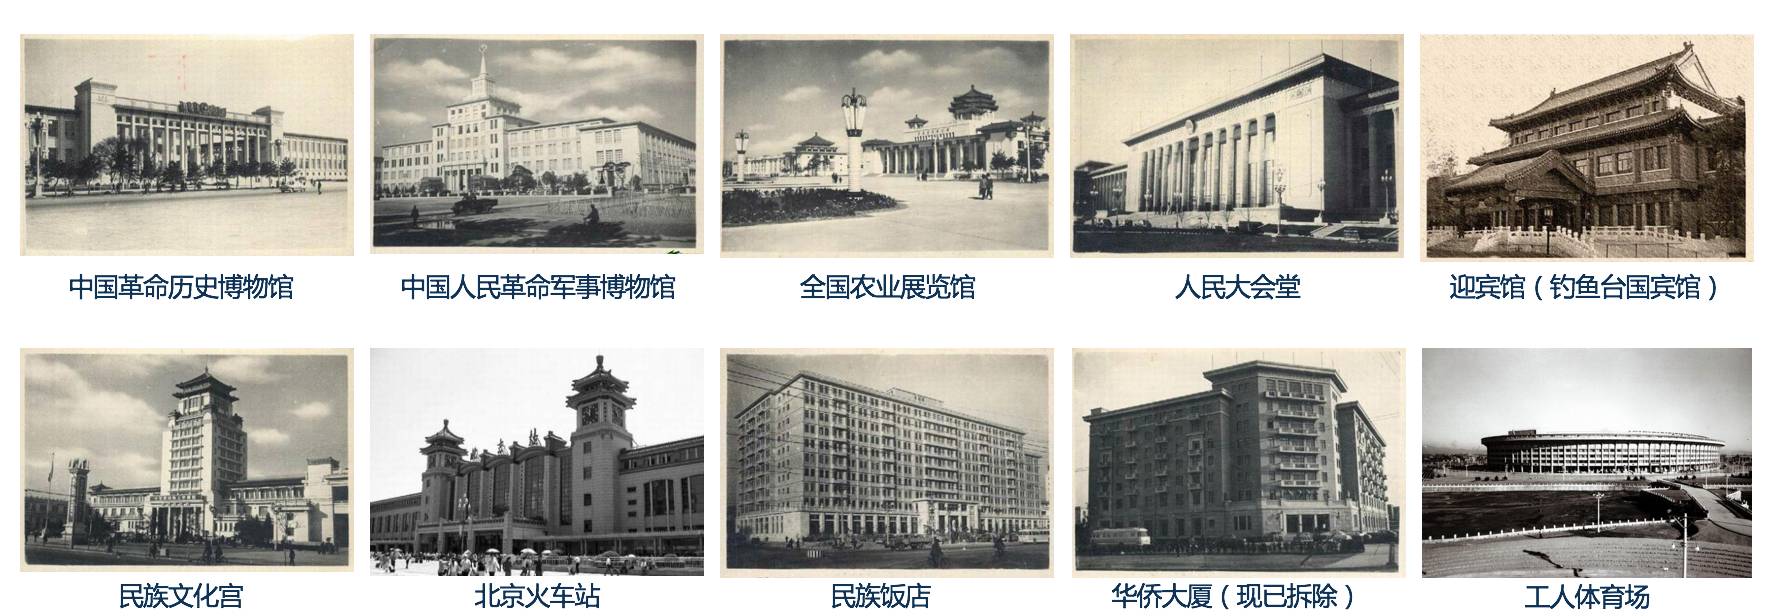 北京十大建筑人民英雄纪念碑是新中国成立后首个国家级公共艺术工程